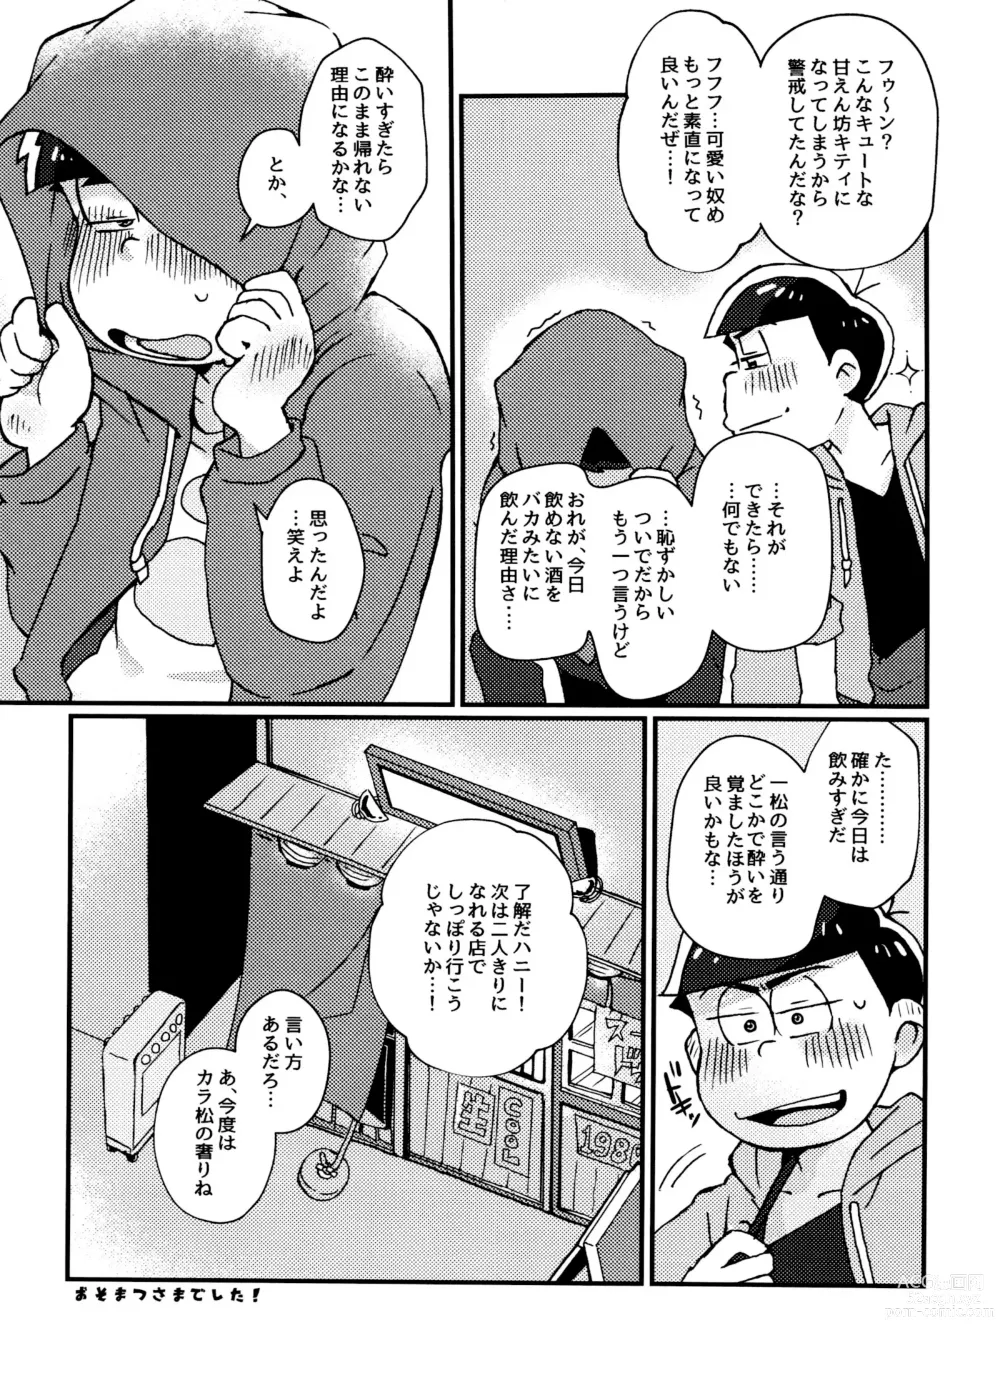 Page 19 of doujinshi Zenbu, Osake no Sei ni Shite!